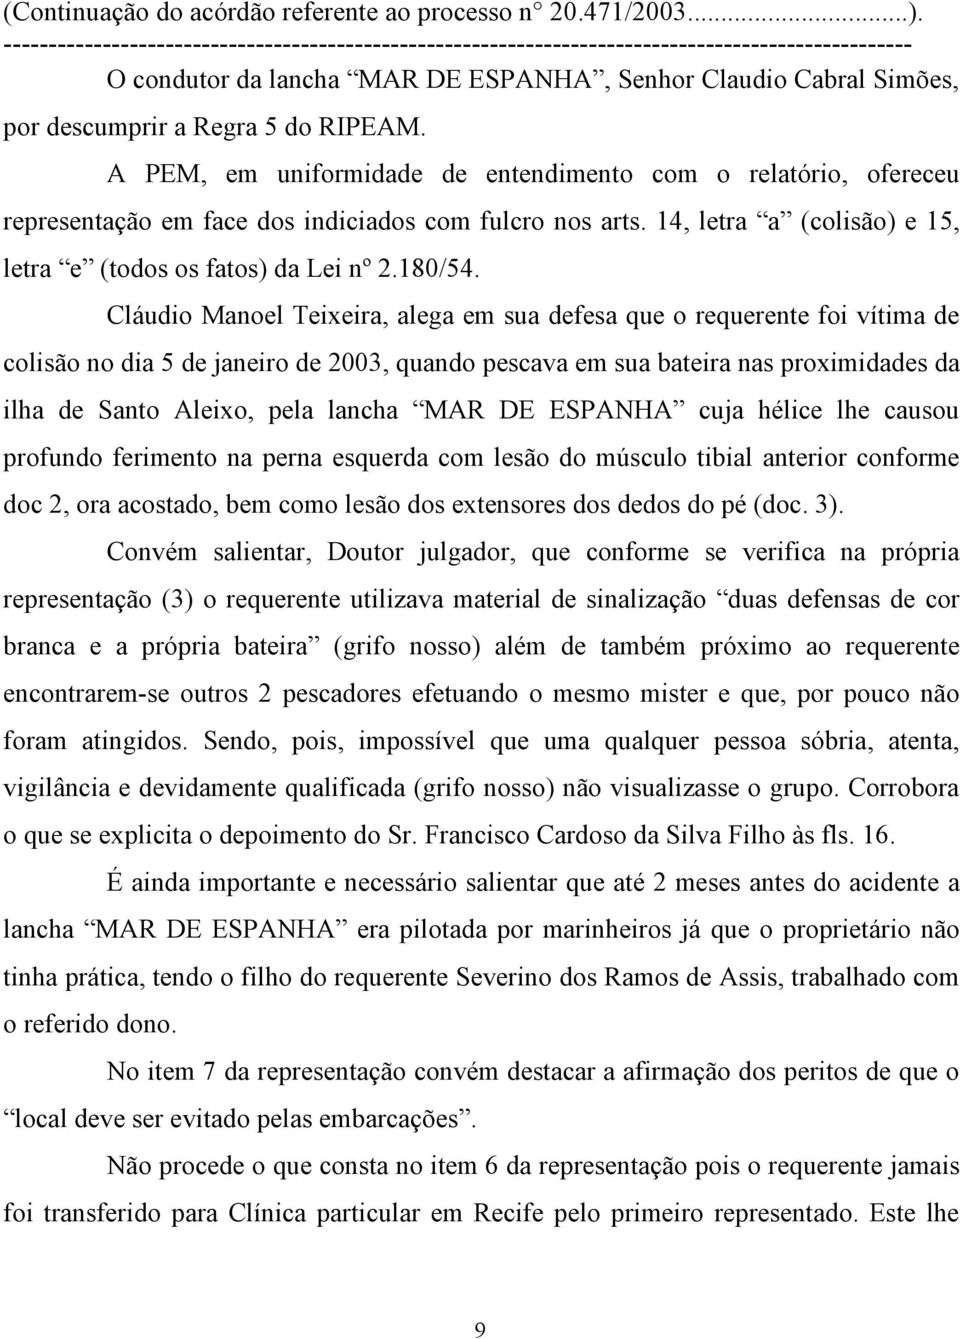 Cláudio Manoel Teixeira, alega em sua defesa que o requerente foi vítima de colisão no dia 5 de janeiro de 2003, quando pescava em sua bateira nas proximidades da ilha de Santo Aleixo, pela lancha